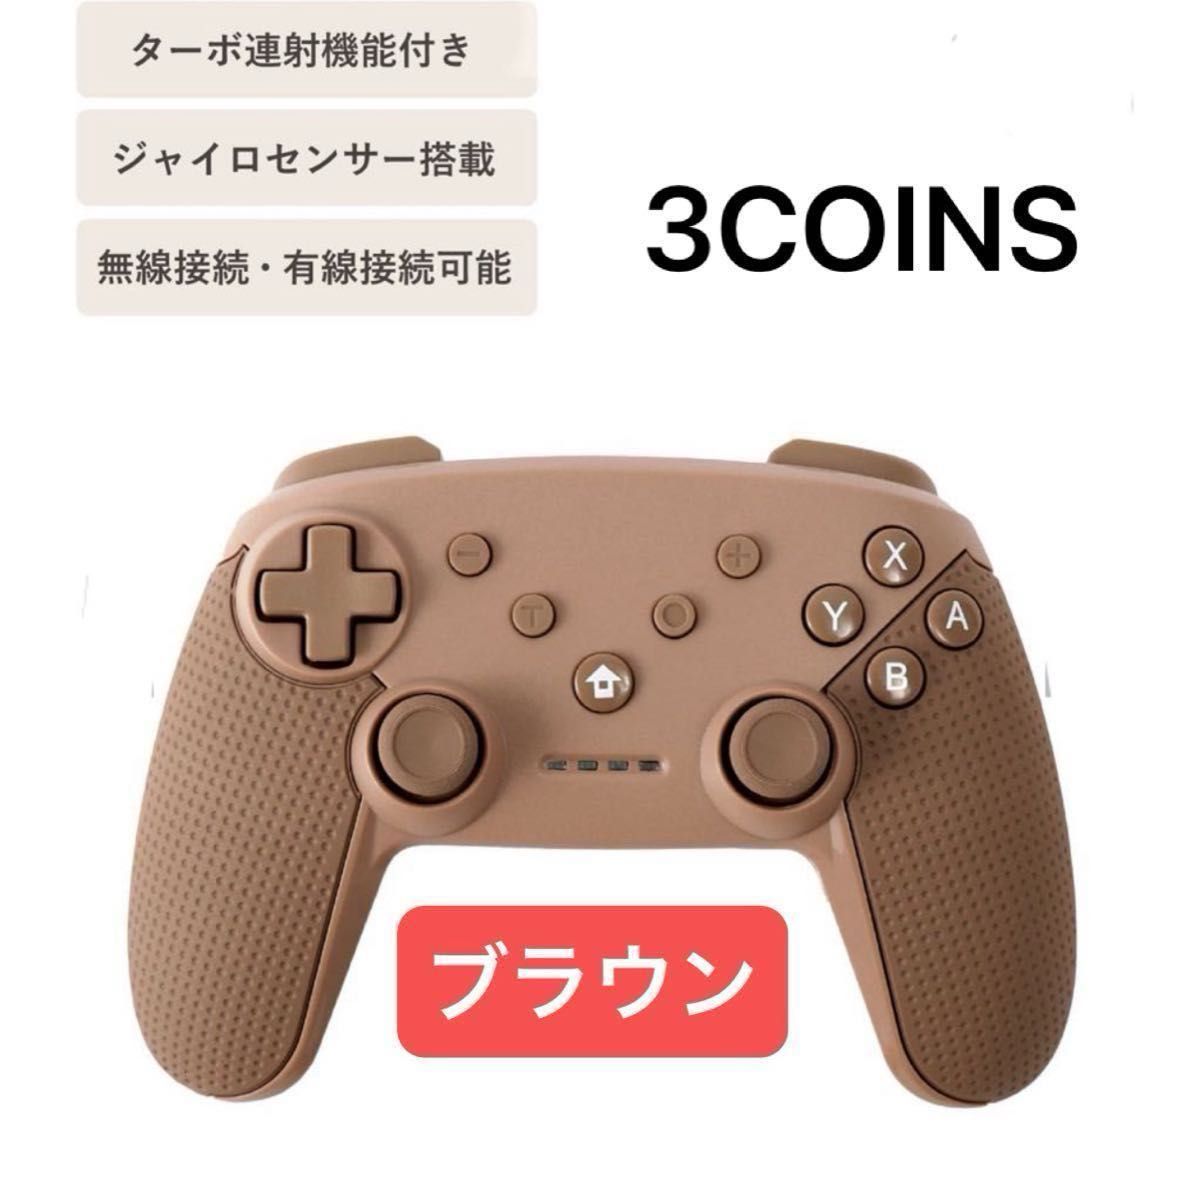 【手数料無料期間のみ価格】未開封ワイヤレスコントローラー　スリーコインズ 3COINS  Switch Nintendo ブラウン